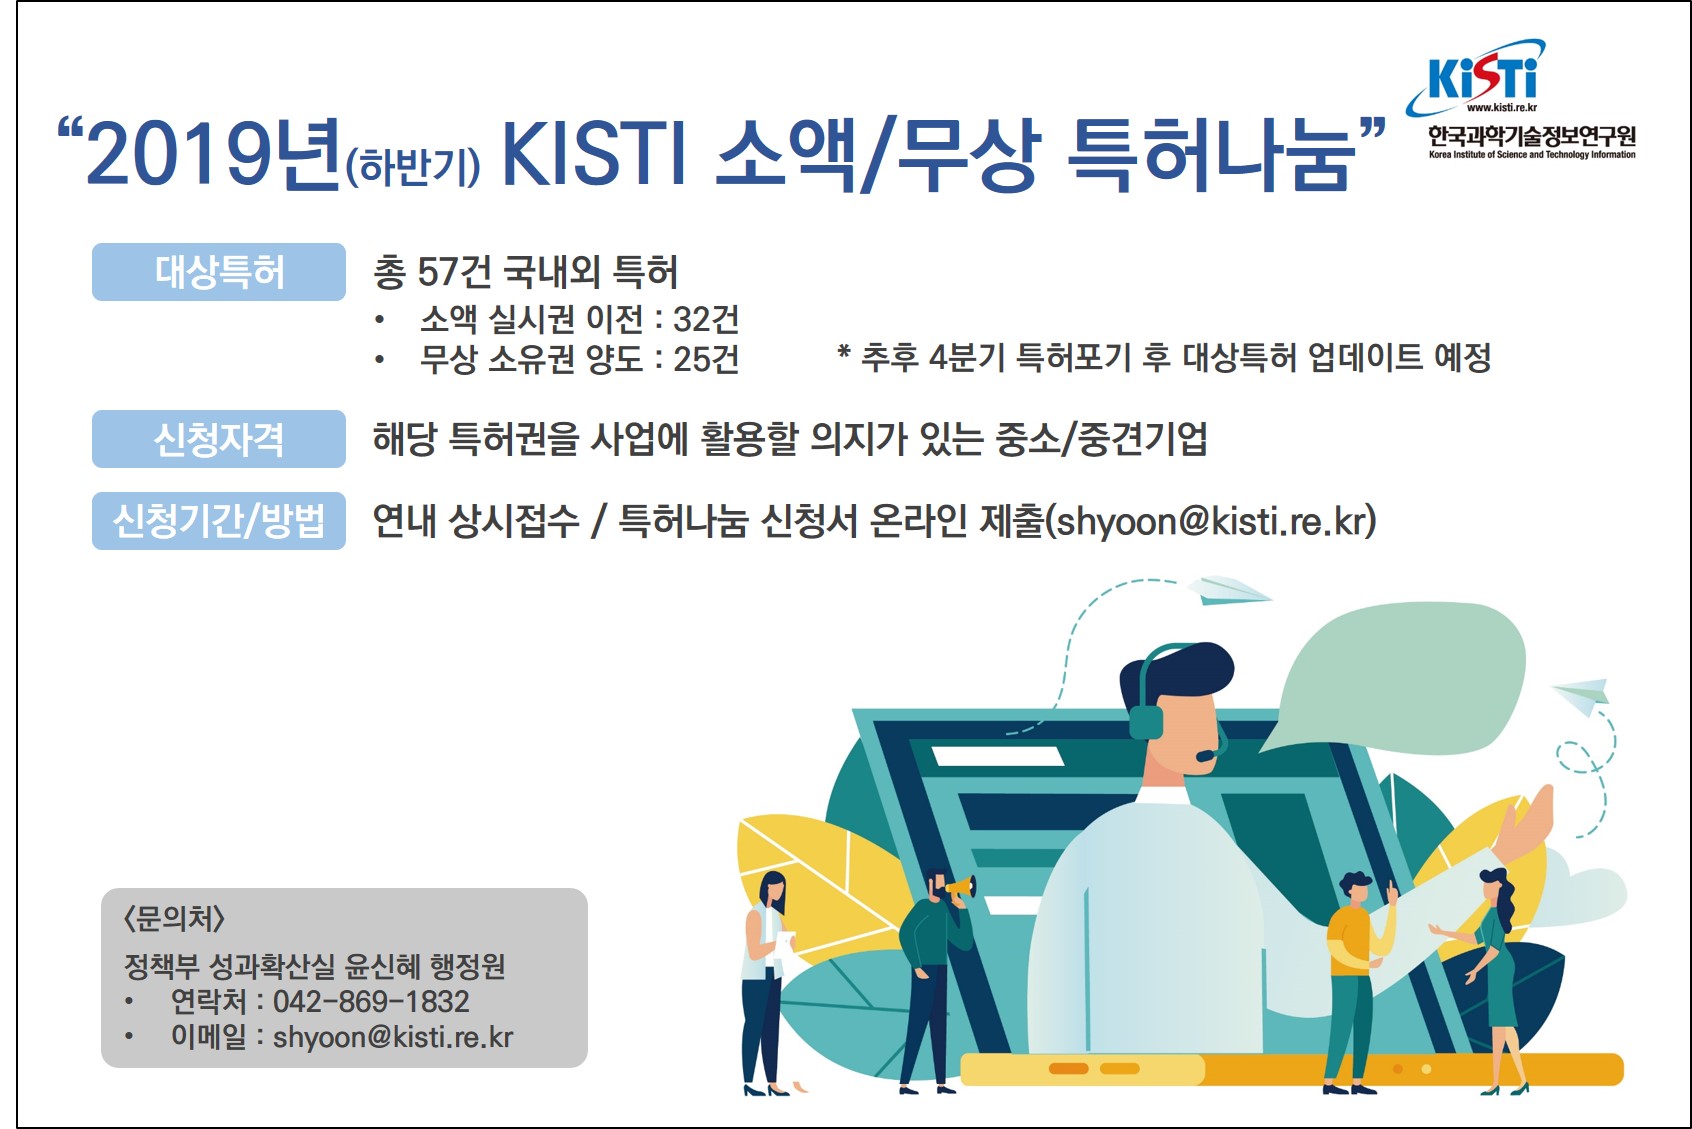 2019년(하반기) KISTI 소액/무상 특허나눔 안내. 자세한 내용은 본문 참조